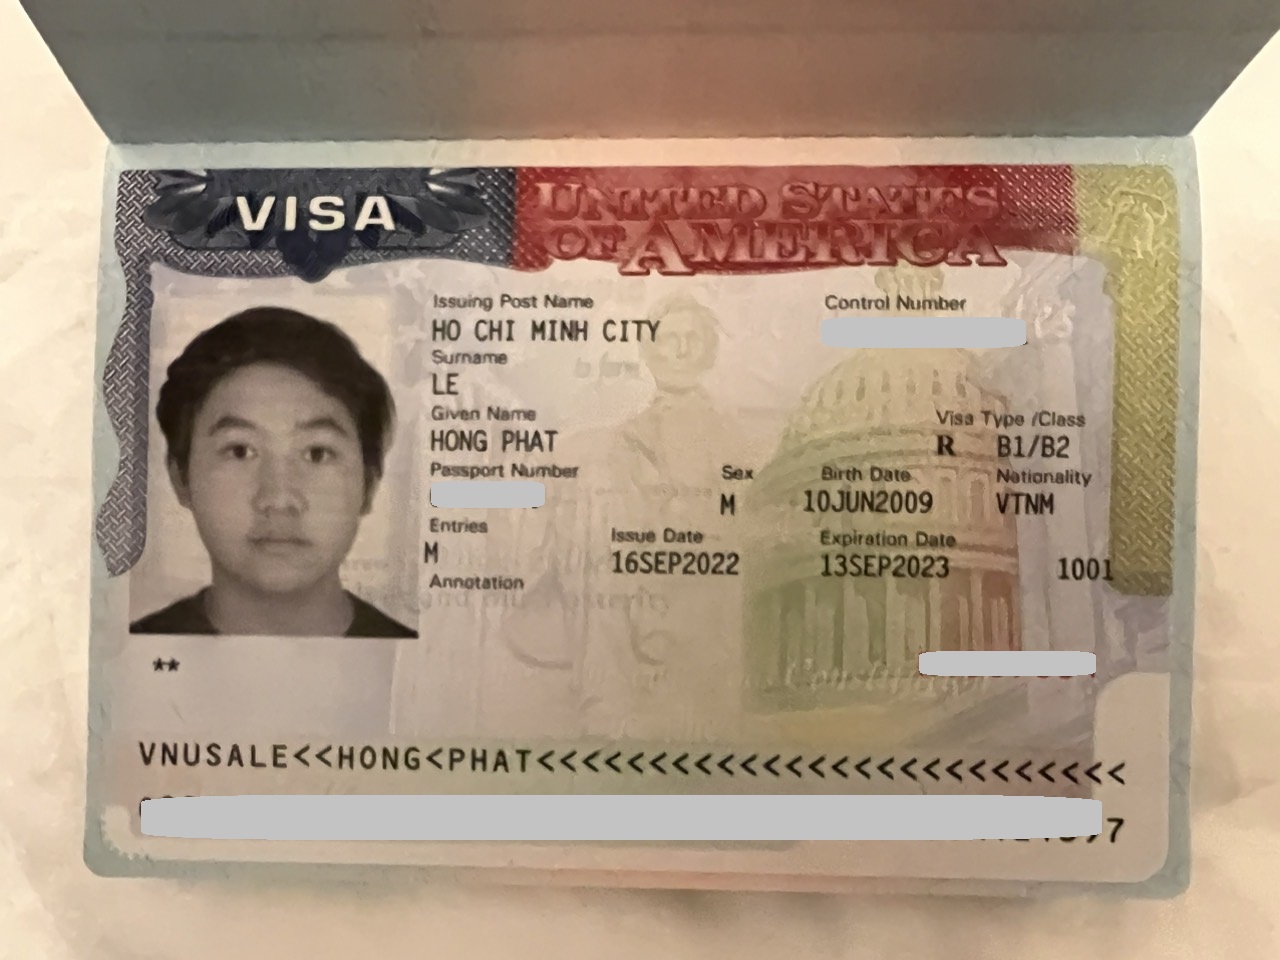 Visa Du lịch Mỹ - anh Lê Hồng Phát